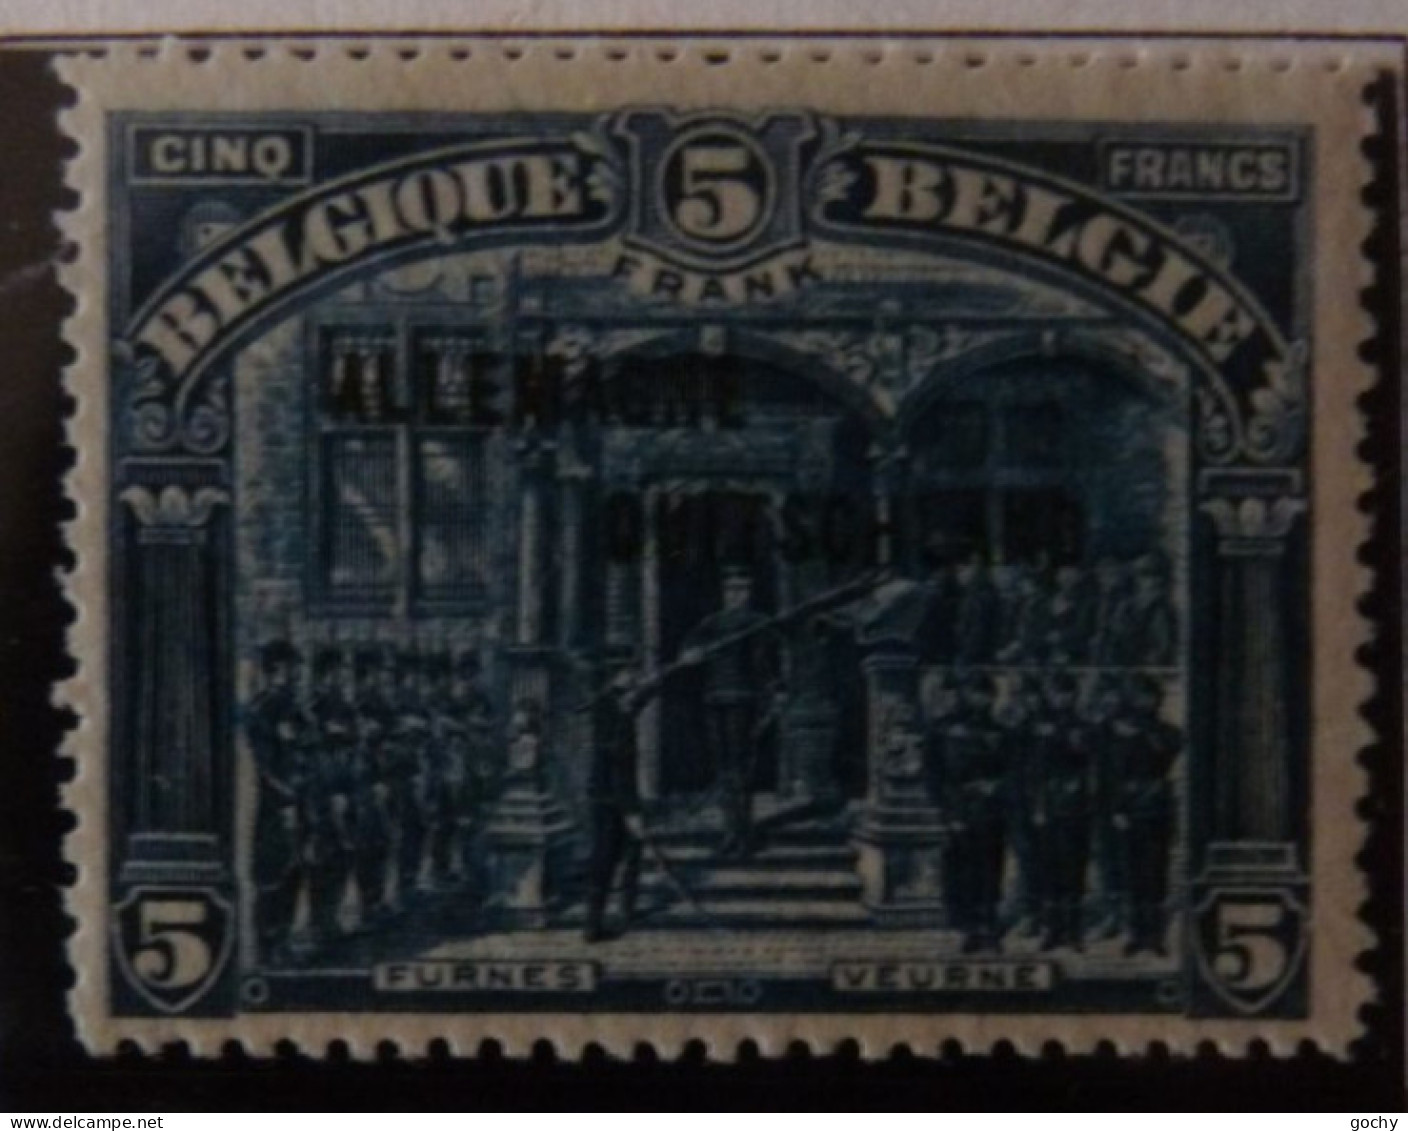 BELGIUM :   1919  - OCCUPATION   OC 38 à 54    */** .  COTE: 418,00€  (54**) - OC38/54 Occupation Belge En Allemagne